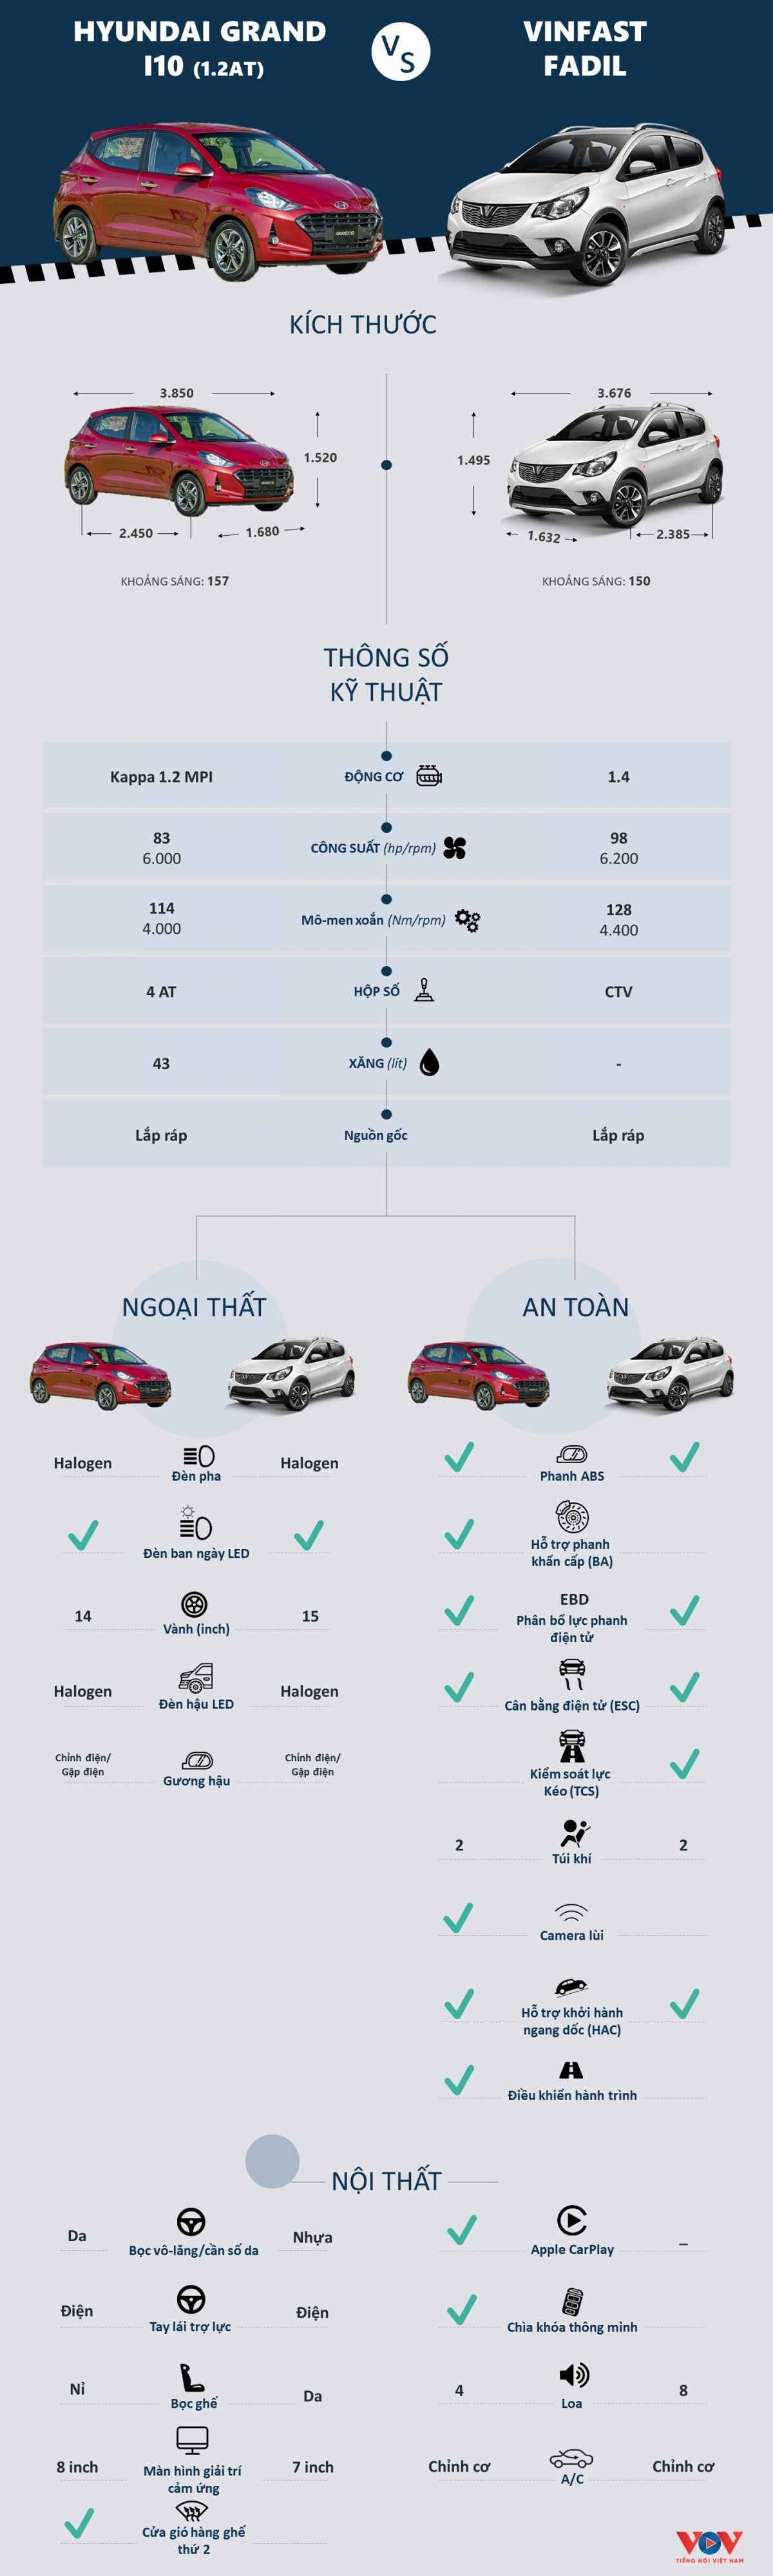 Mua Hyundai Grand i10 mới hay VinFast Fadil với 400 triệu đồng? - Ảnh 1.